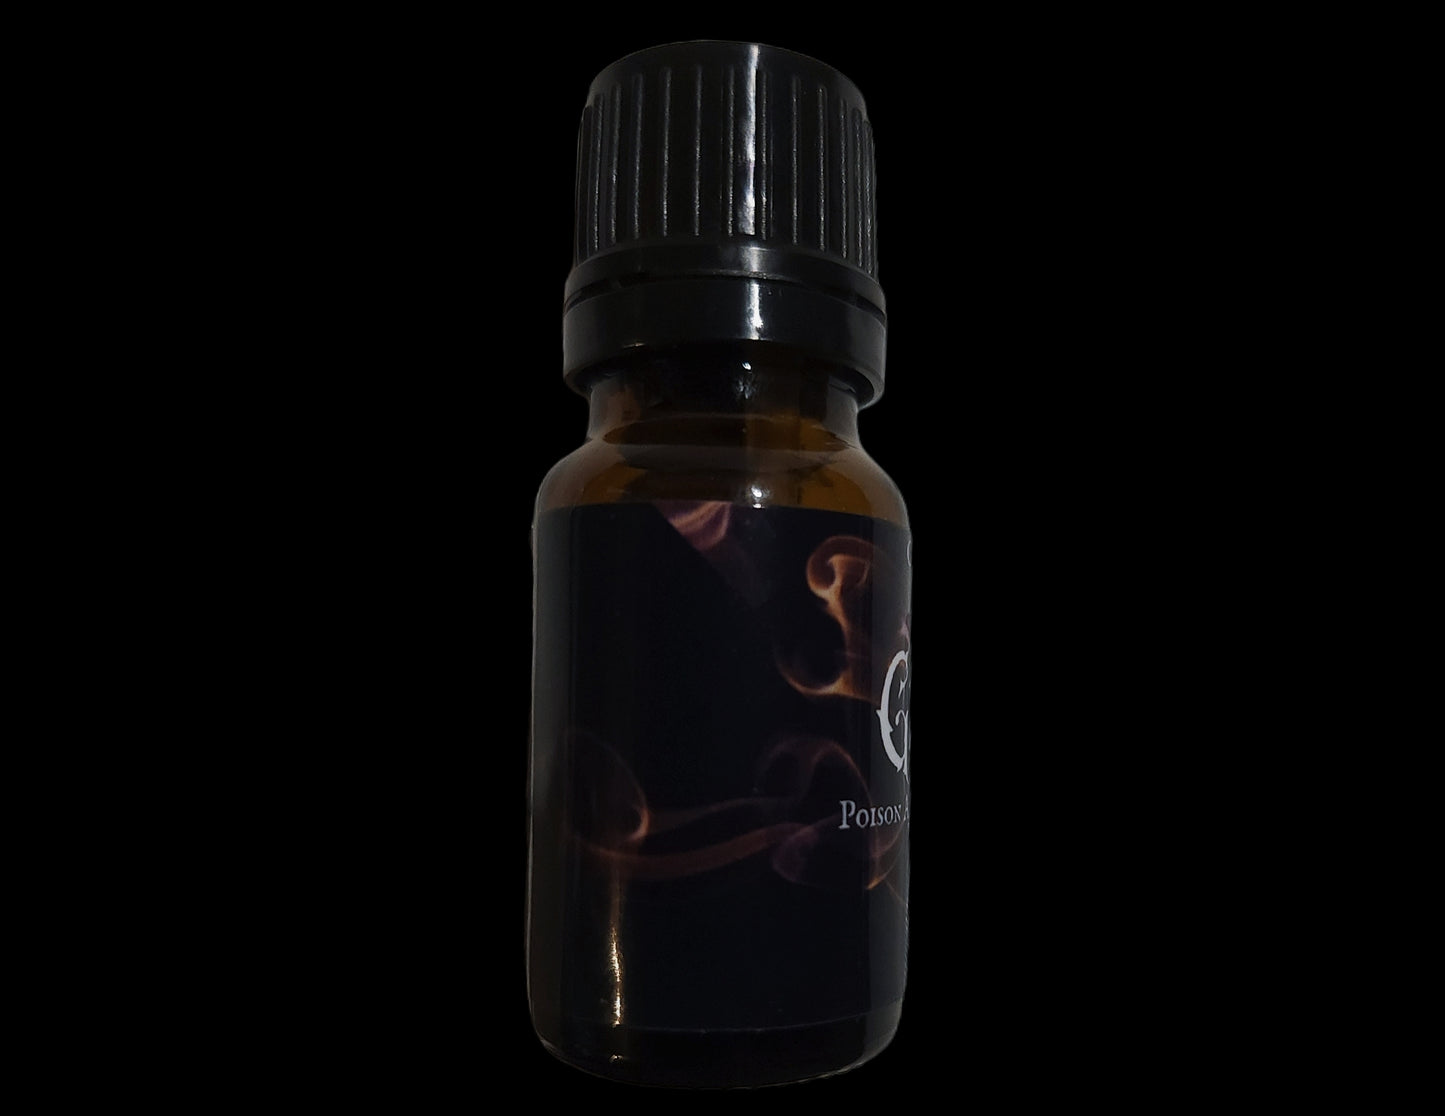 Grimhilde Perfume Oil